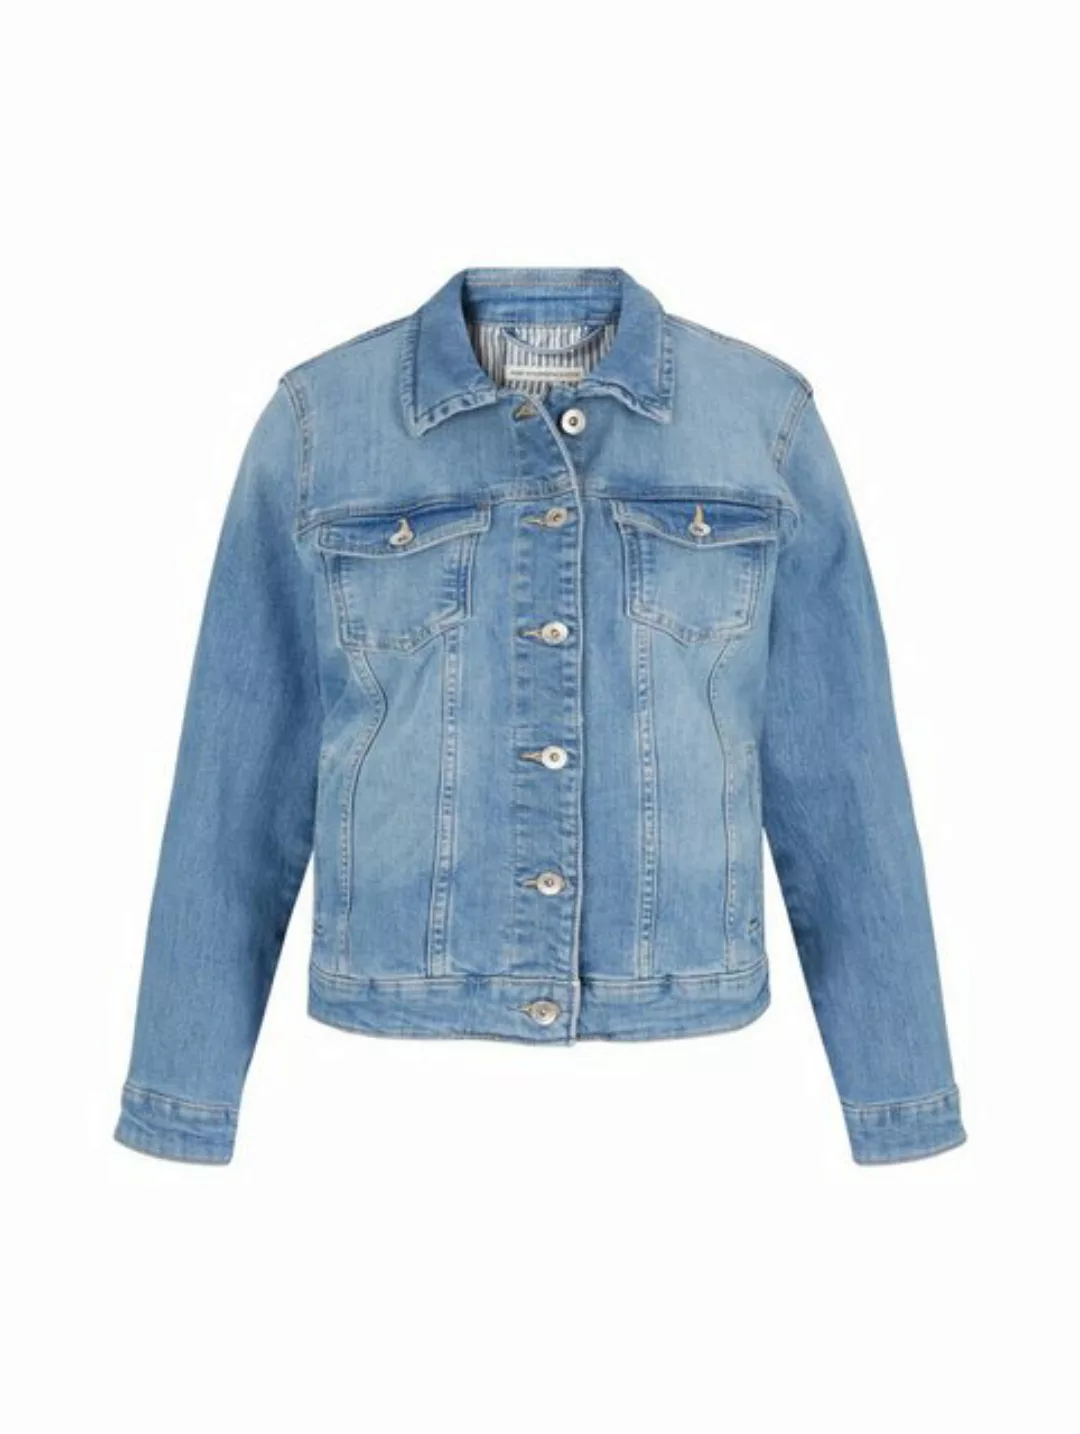 TOM TAILOR Outdoorjacke authentic denim jacket, Light Stone Blue Denim günstig online kaufen